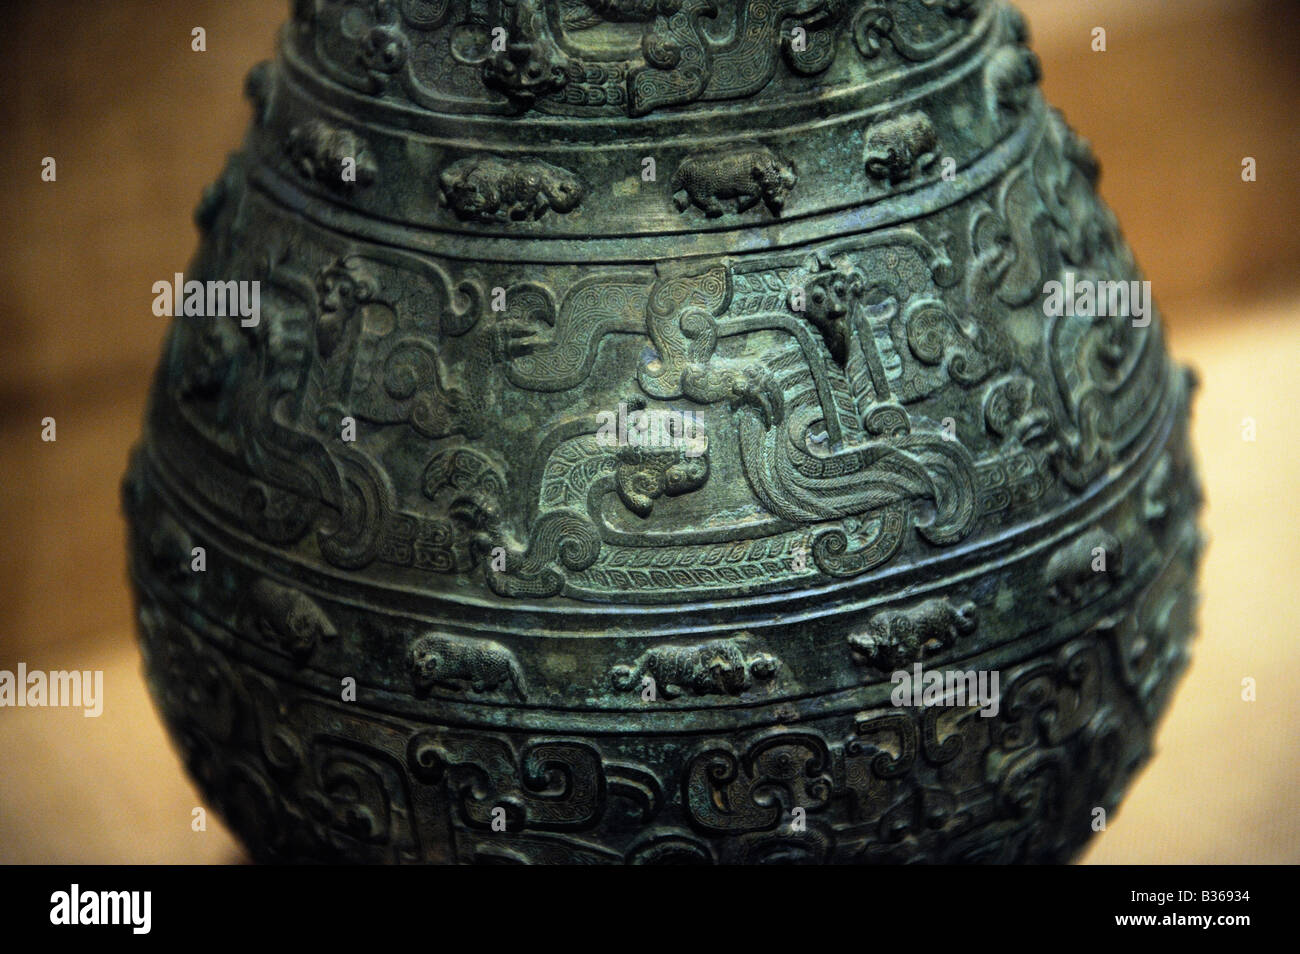 Details zu einem bronzenen Gefäß mit Vögel, Tiere und Drachen verziert. (770476 V. CHR.) Stockfoto